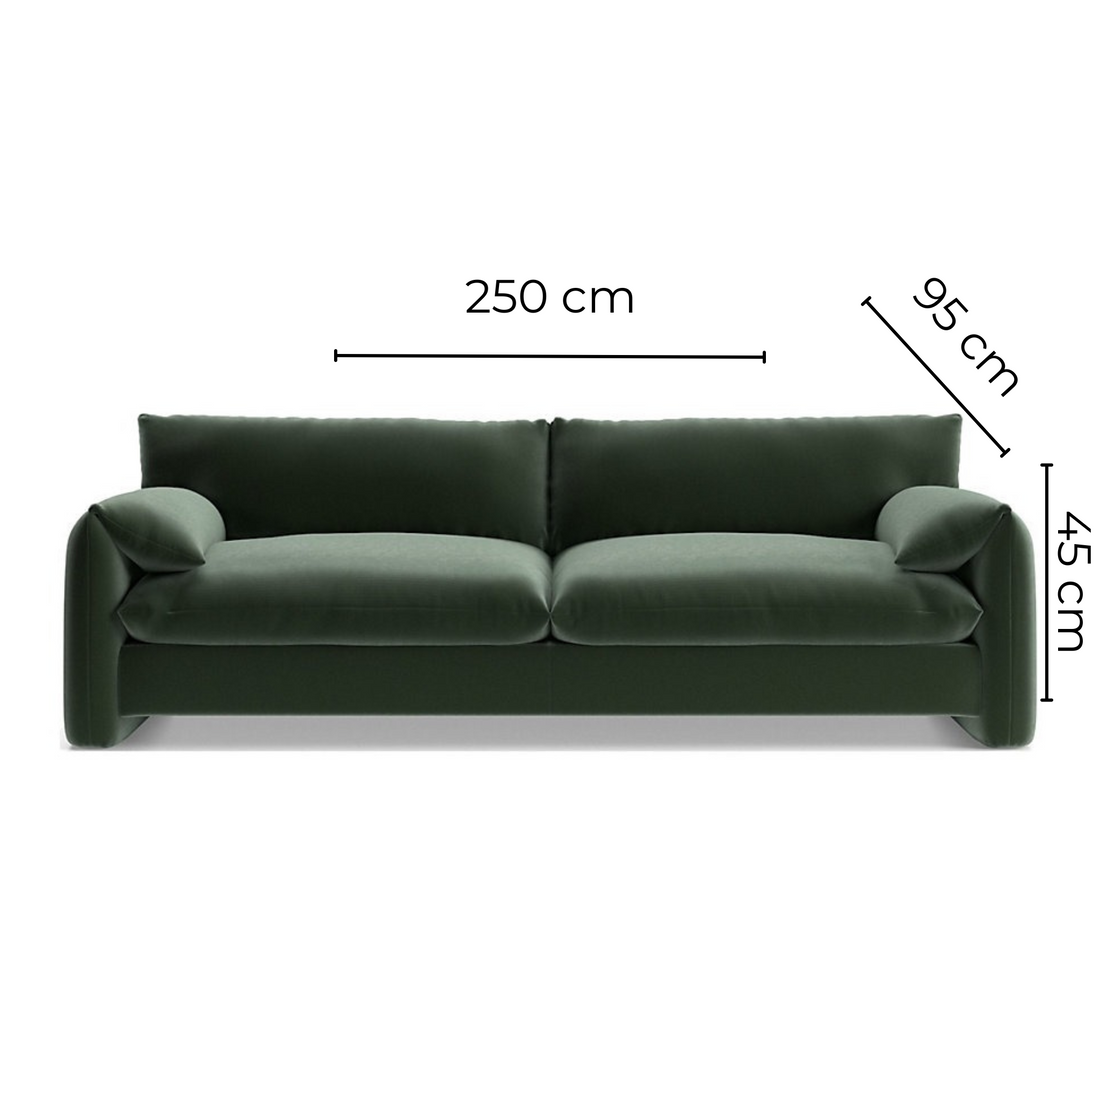 Range Sofa